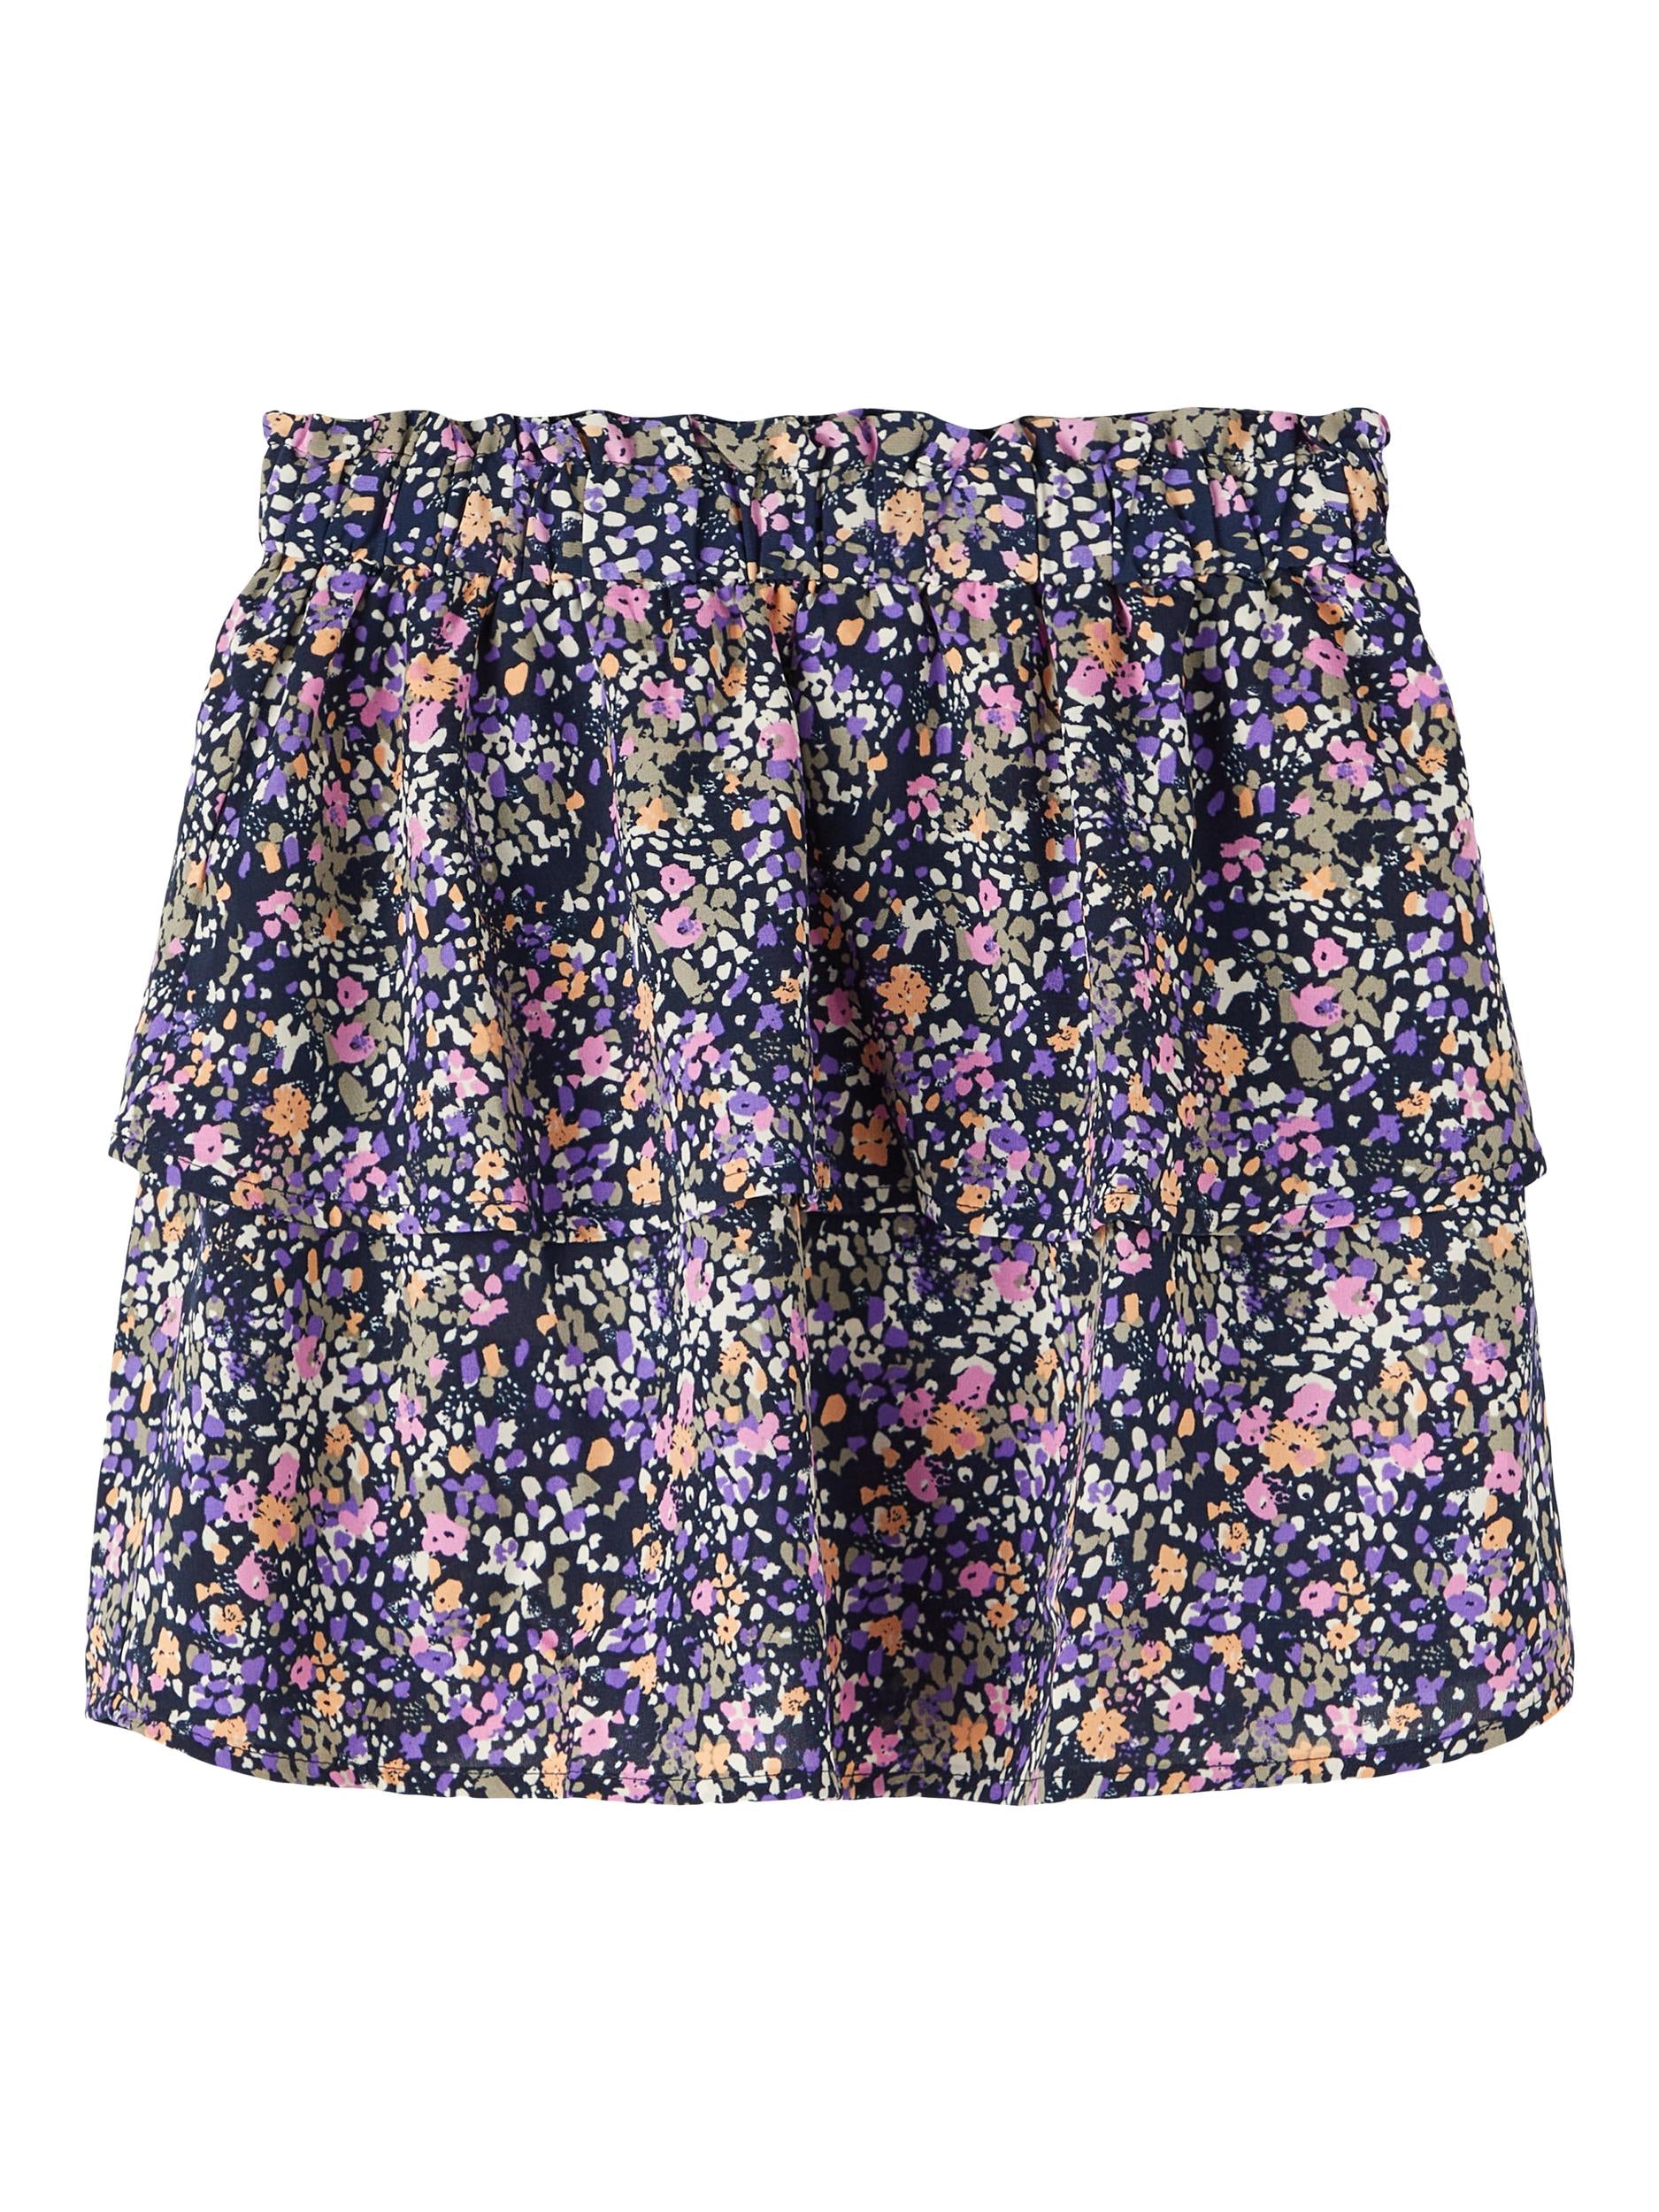 Girl's Dark Sapphire Bodila Skirt-Front View